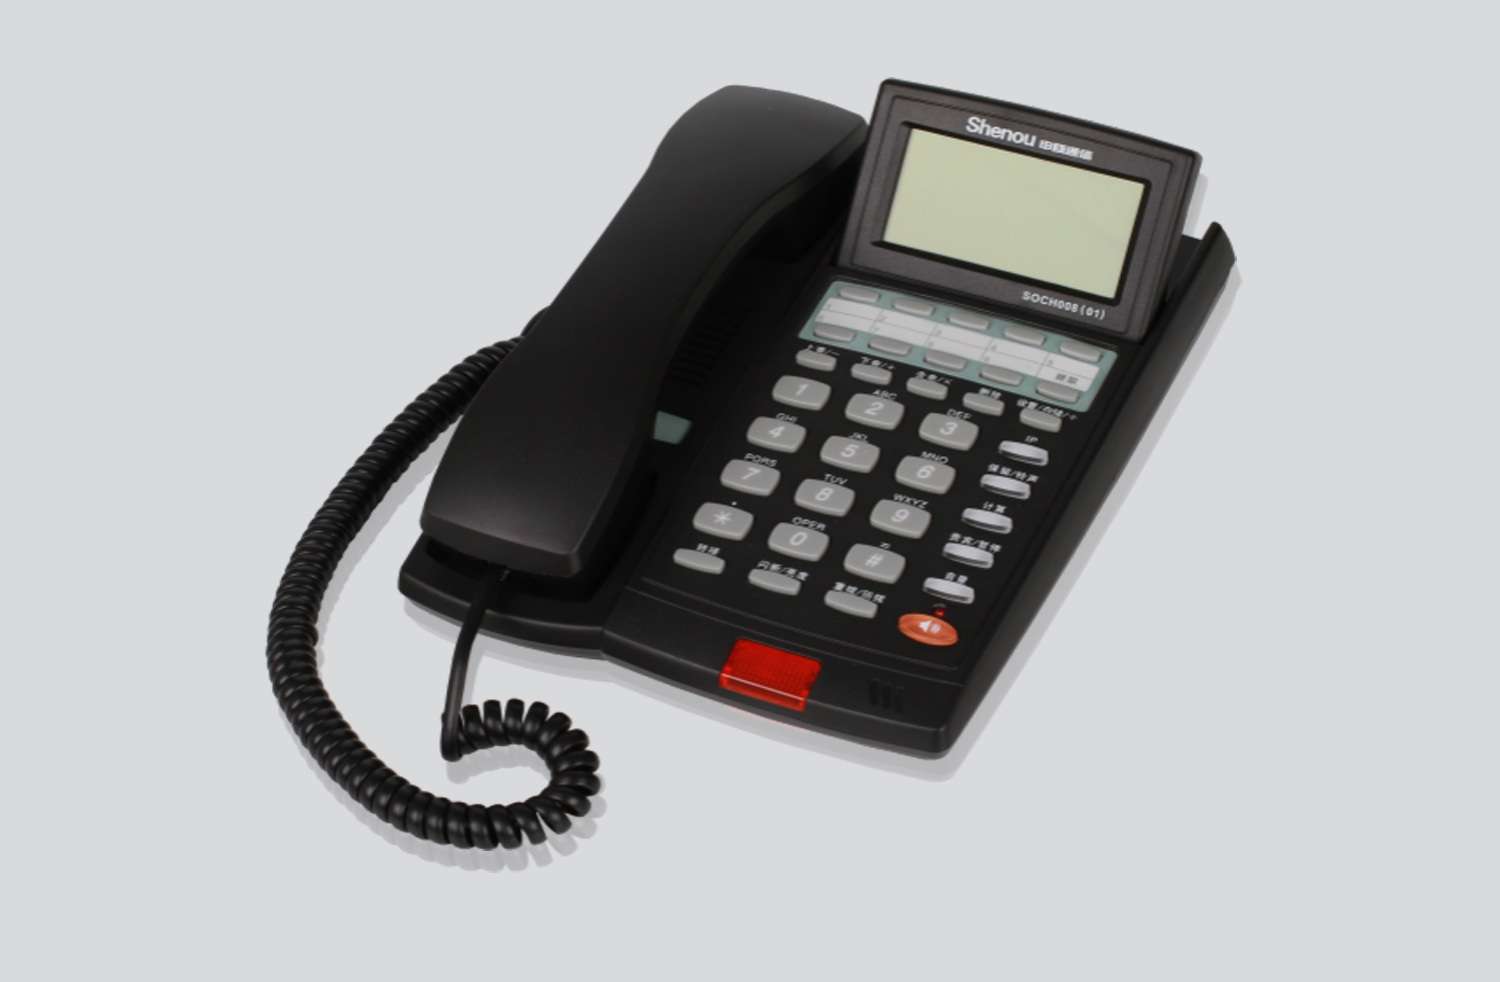 申瓯HCD999(1)TSD电话机